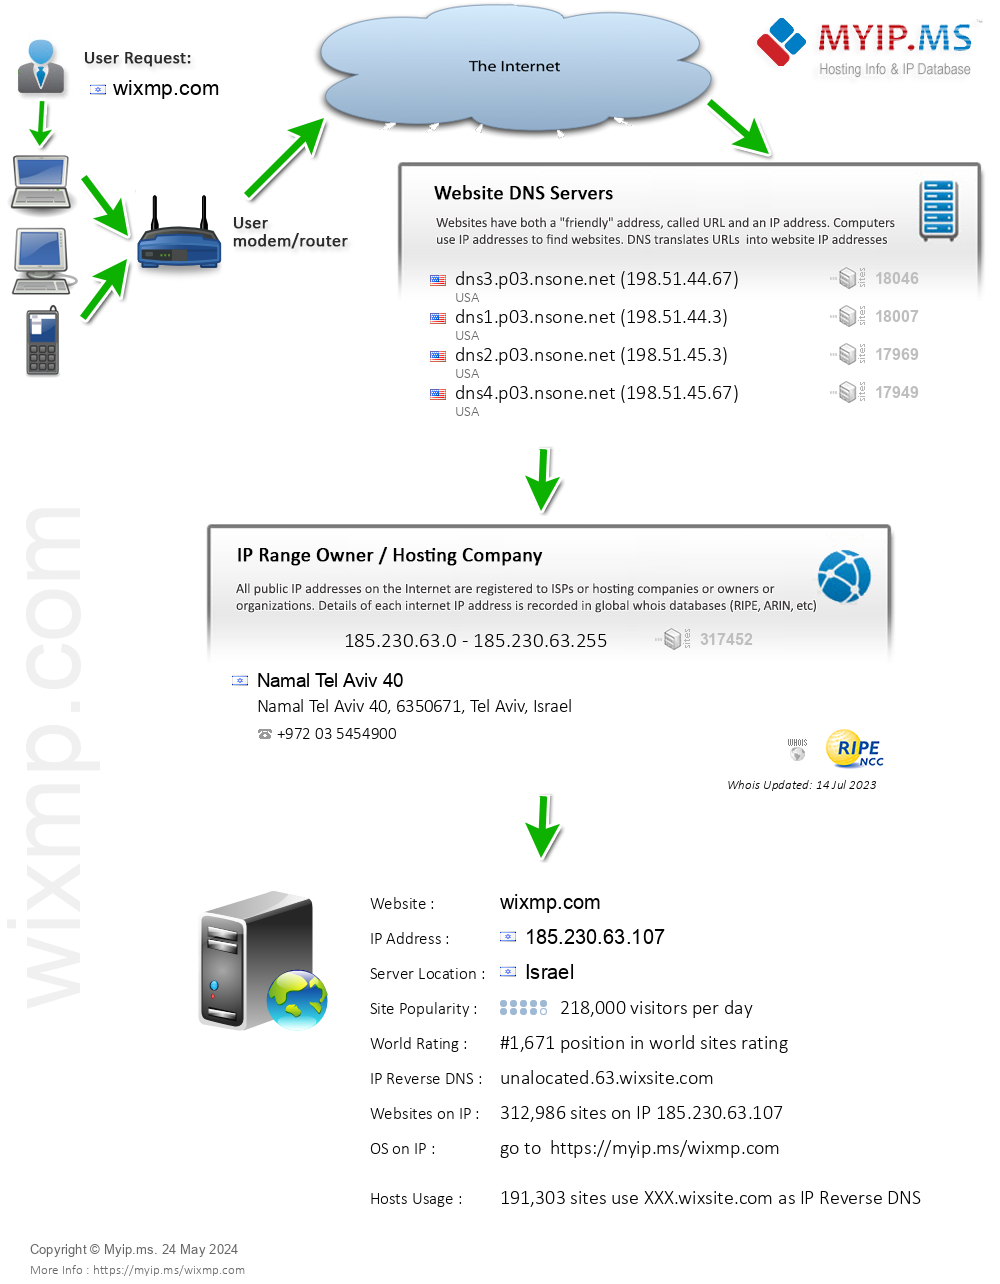 Wixmp.com - Website Hosting Visual IP Diagram